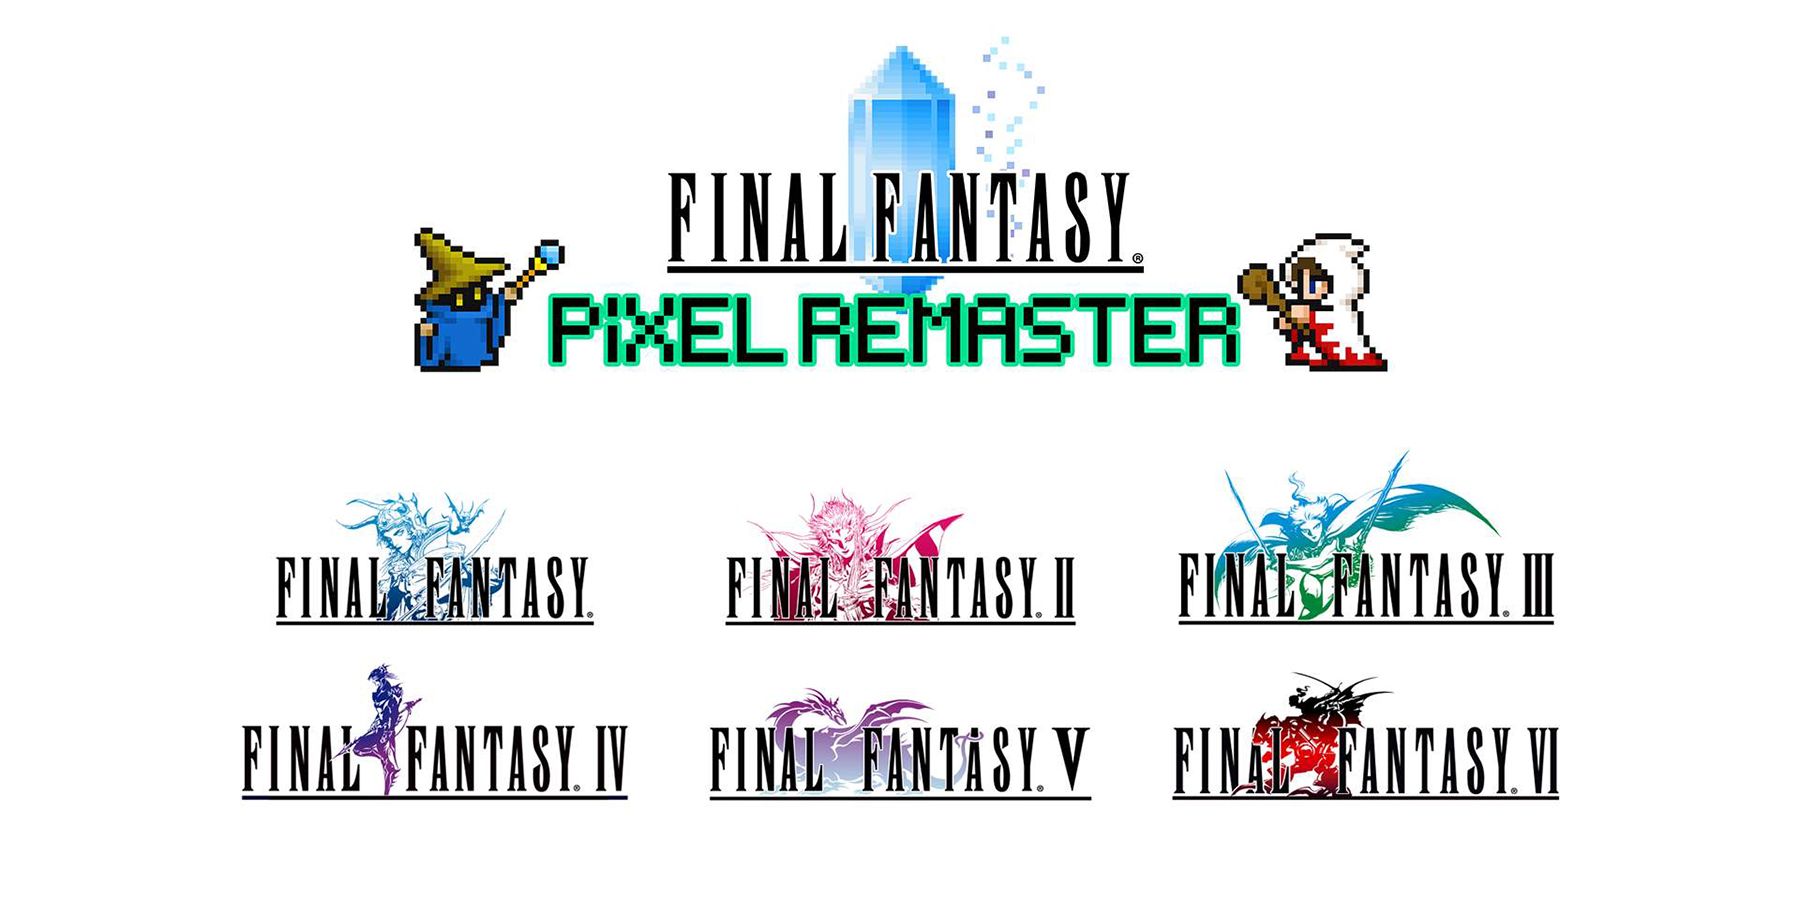 final fantasy pixel remaster logo six game titles